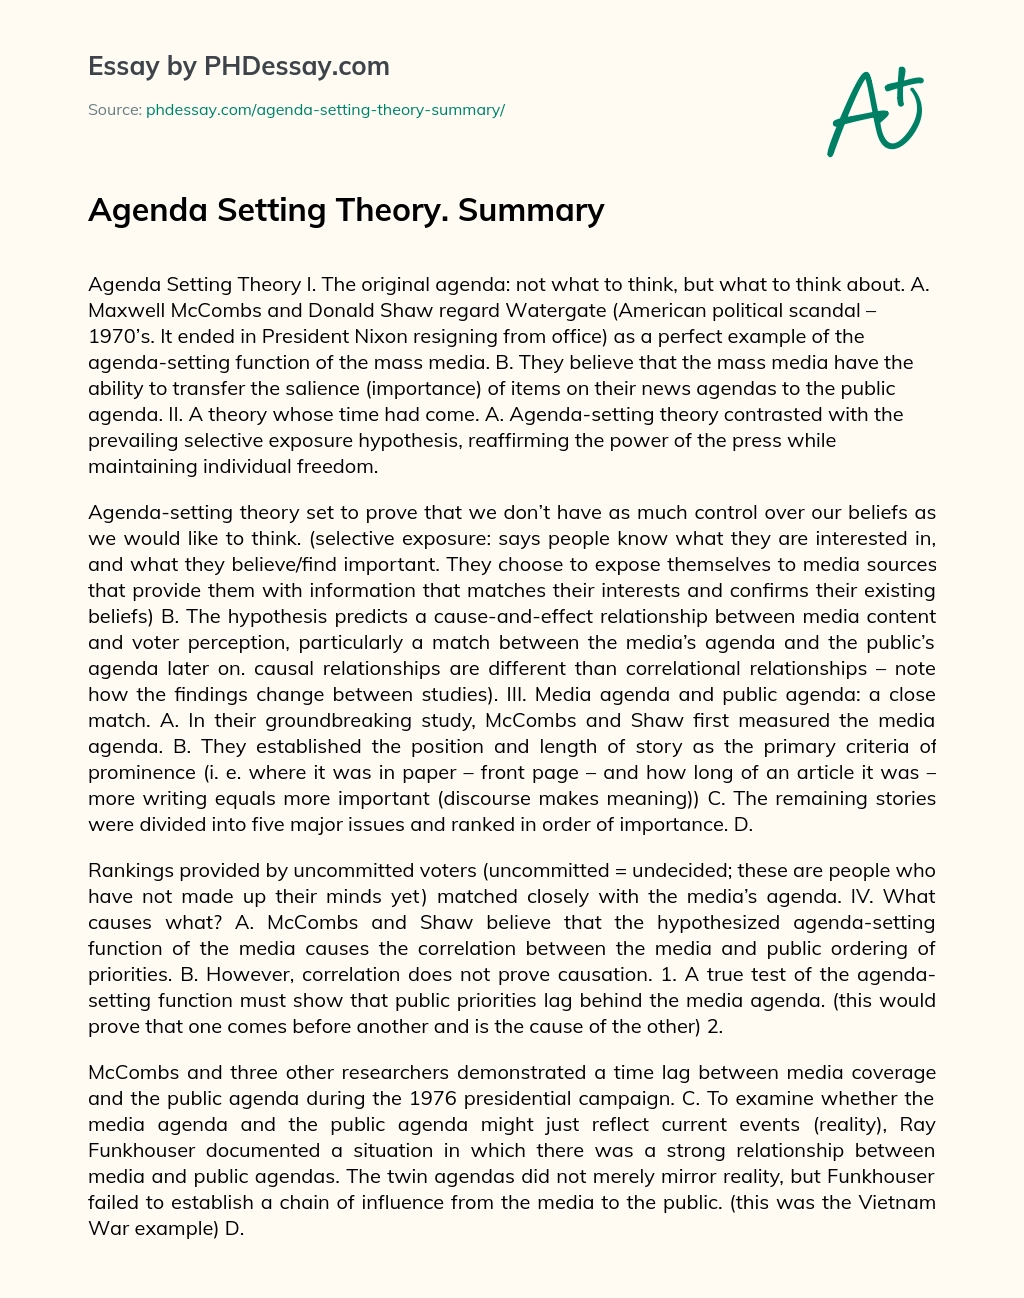 Agenda Setting Theory. Summary essay